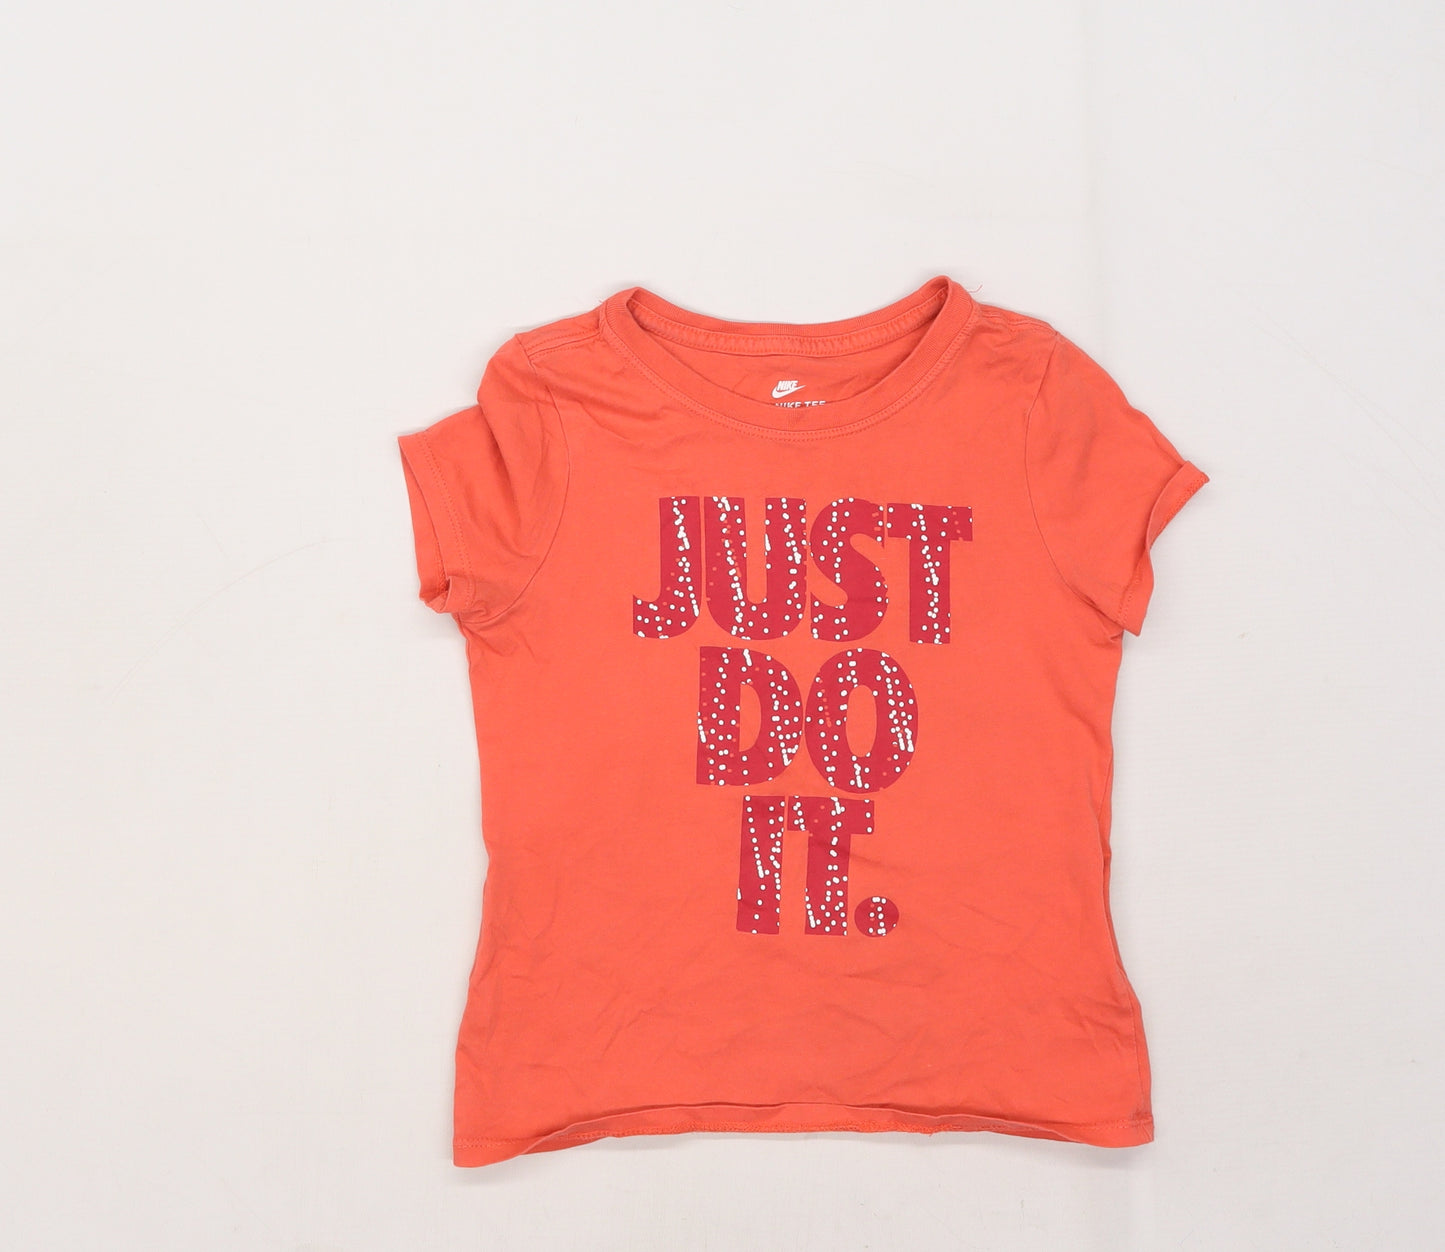 Nike Girls Pink   Basic T-Shirt Size 6-7 Years  - slogan